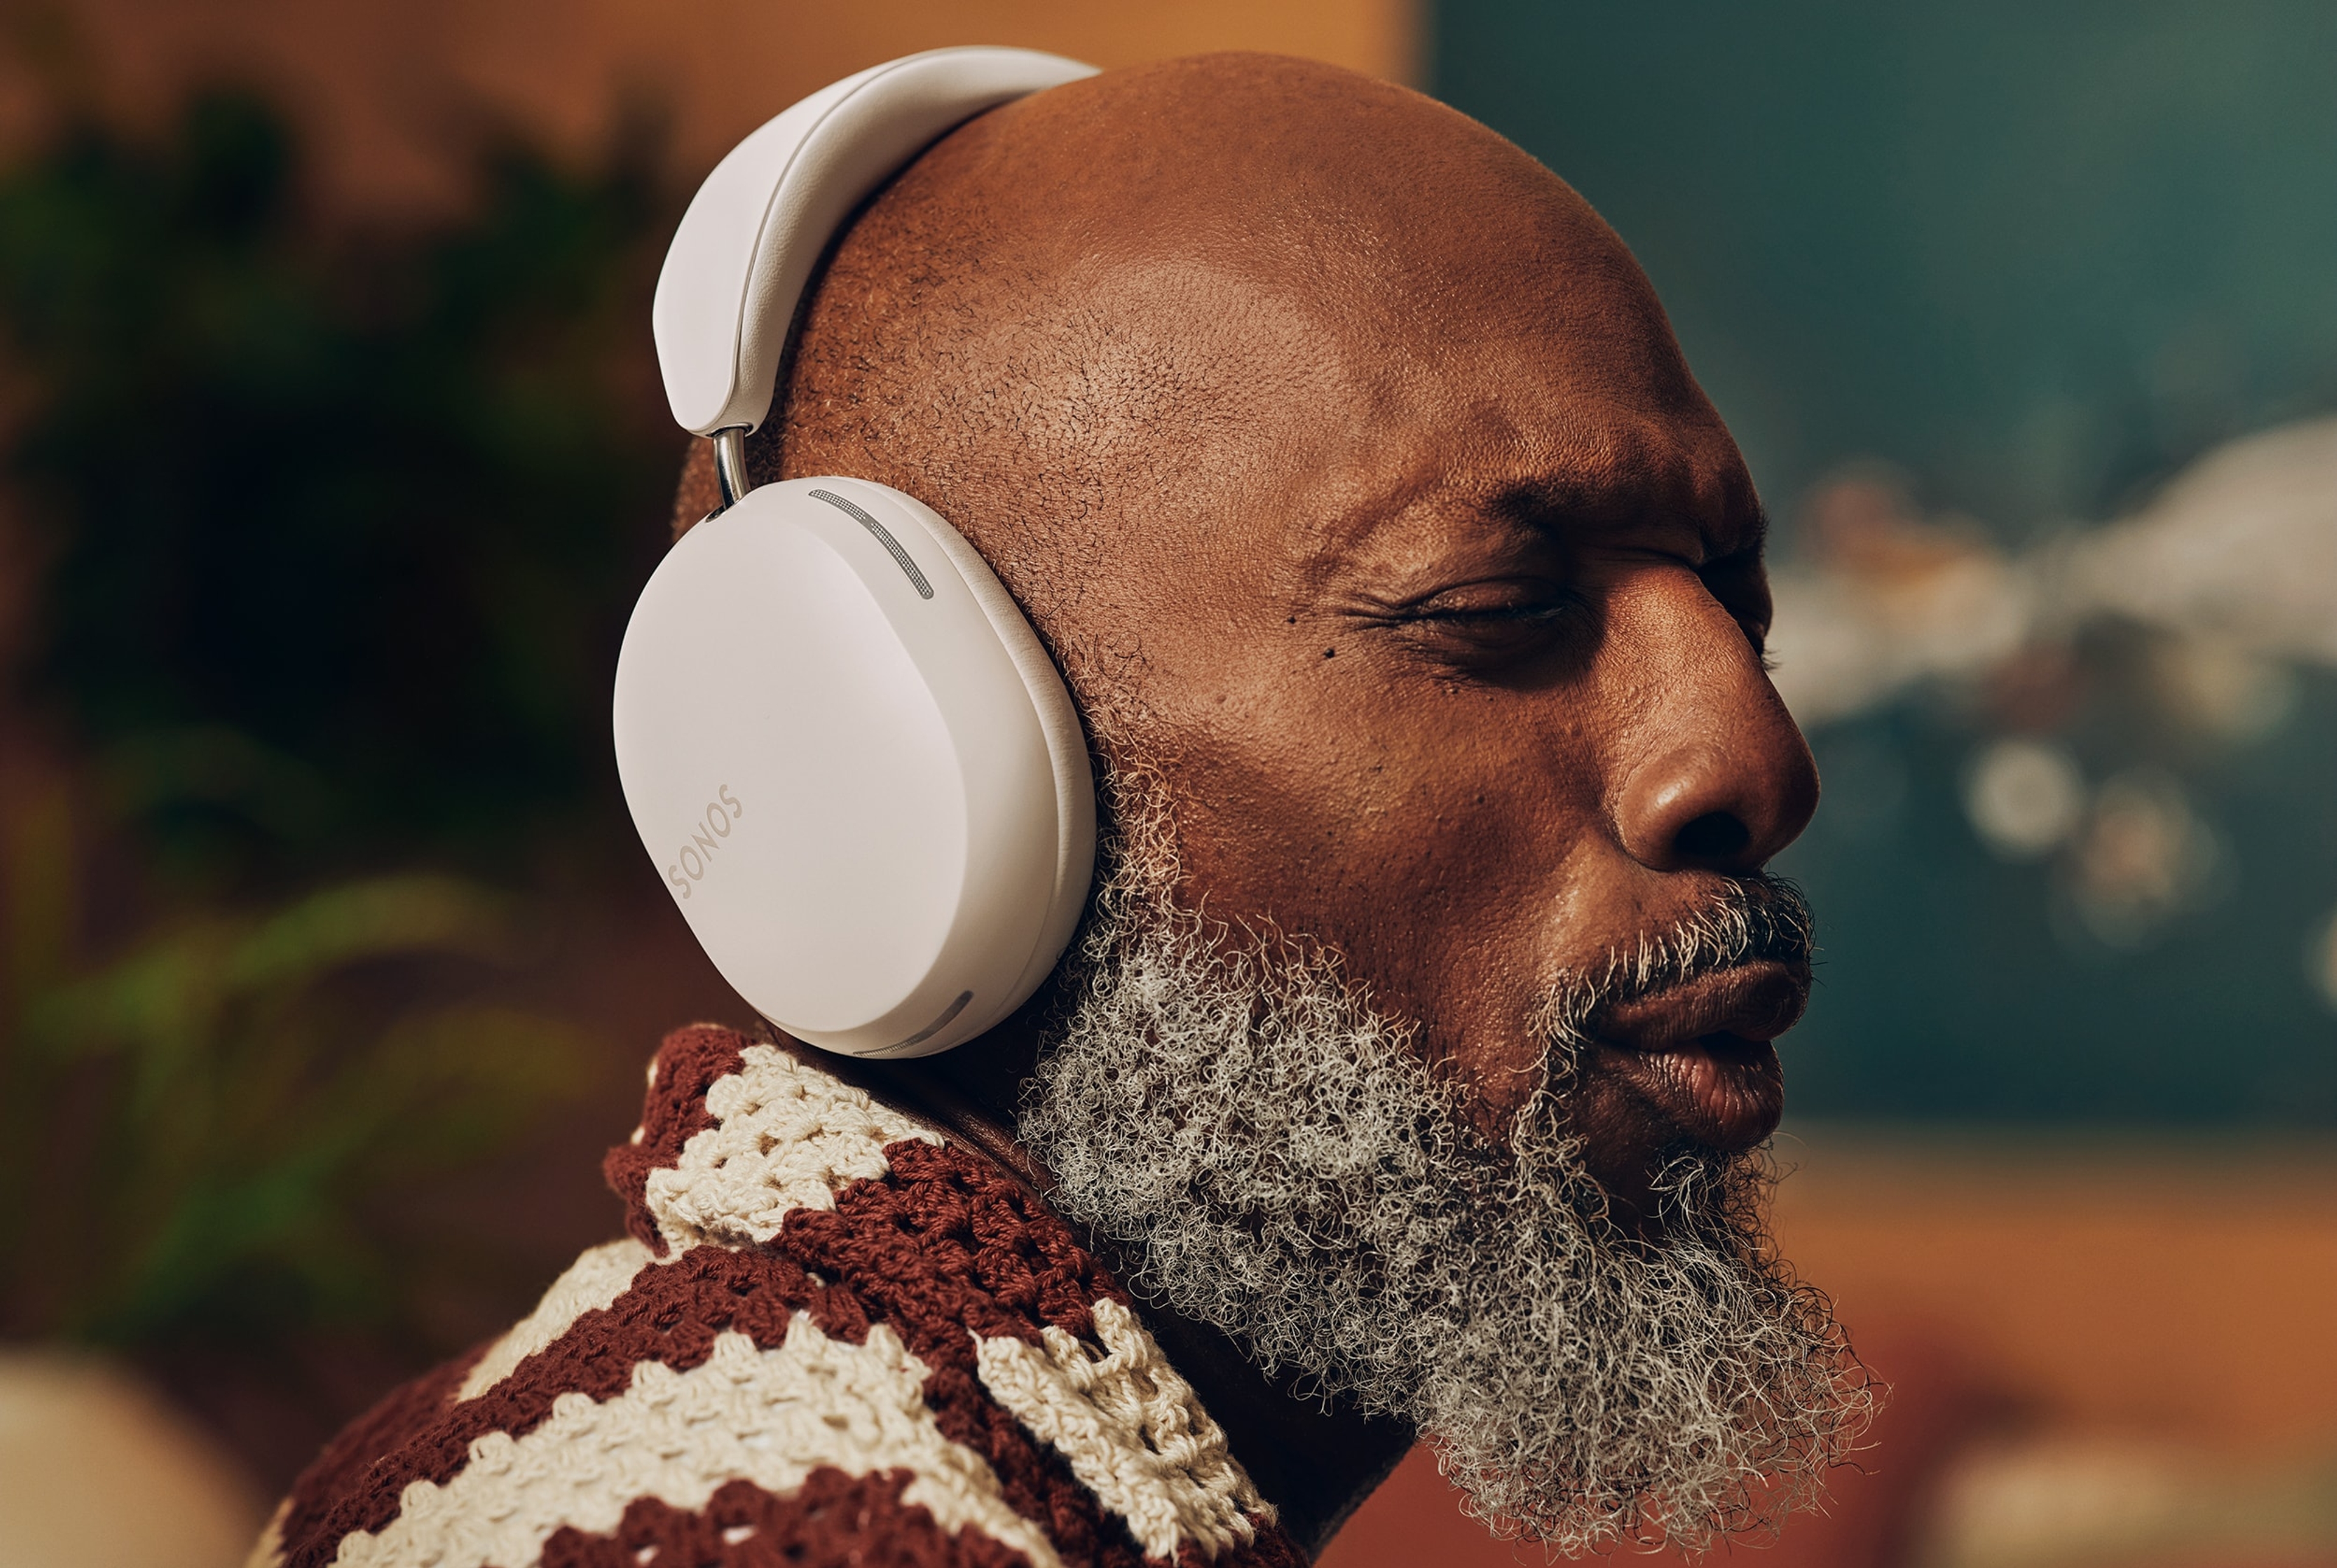 Un hombre escucha música en sus audífonos Sonos Ace en blanco